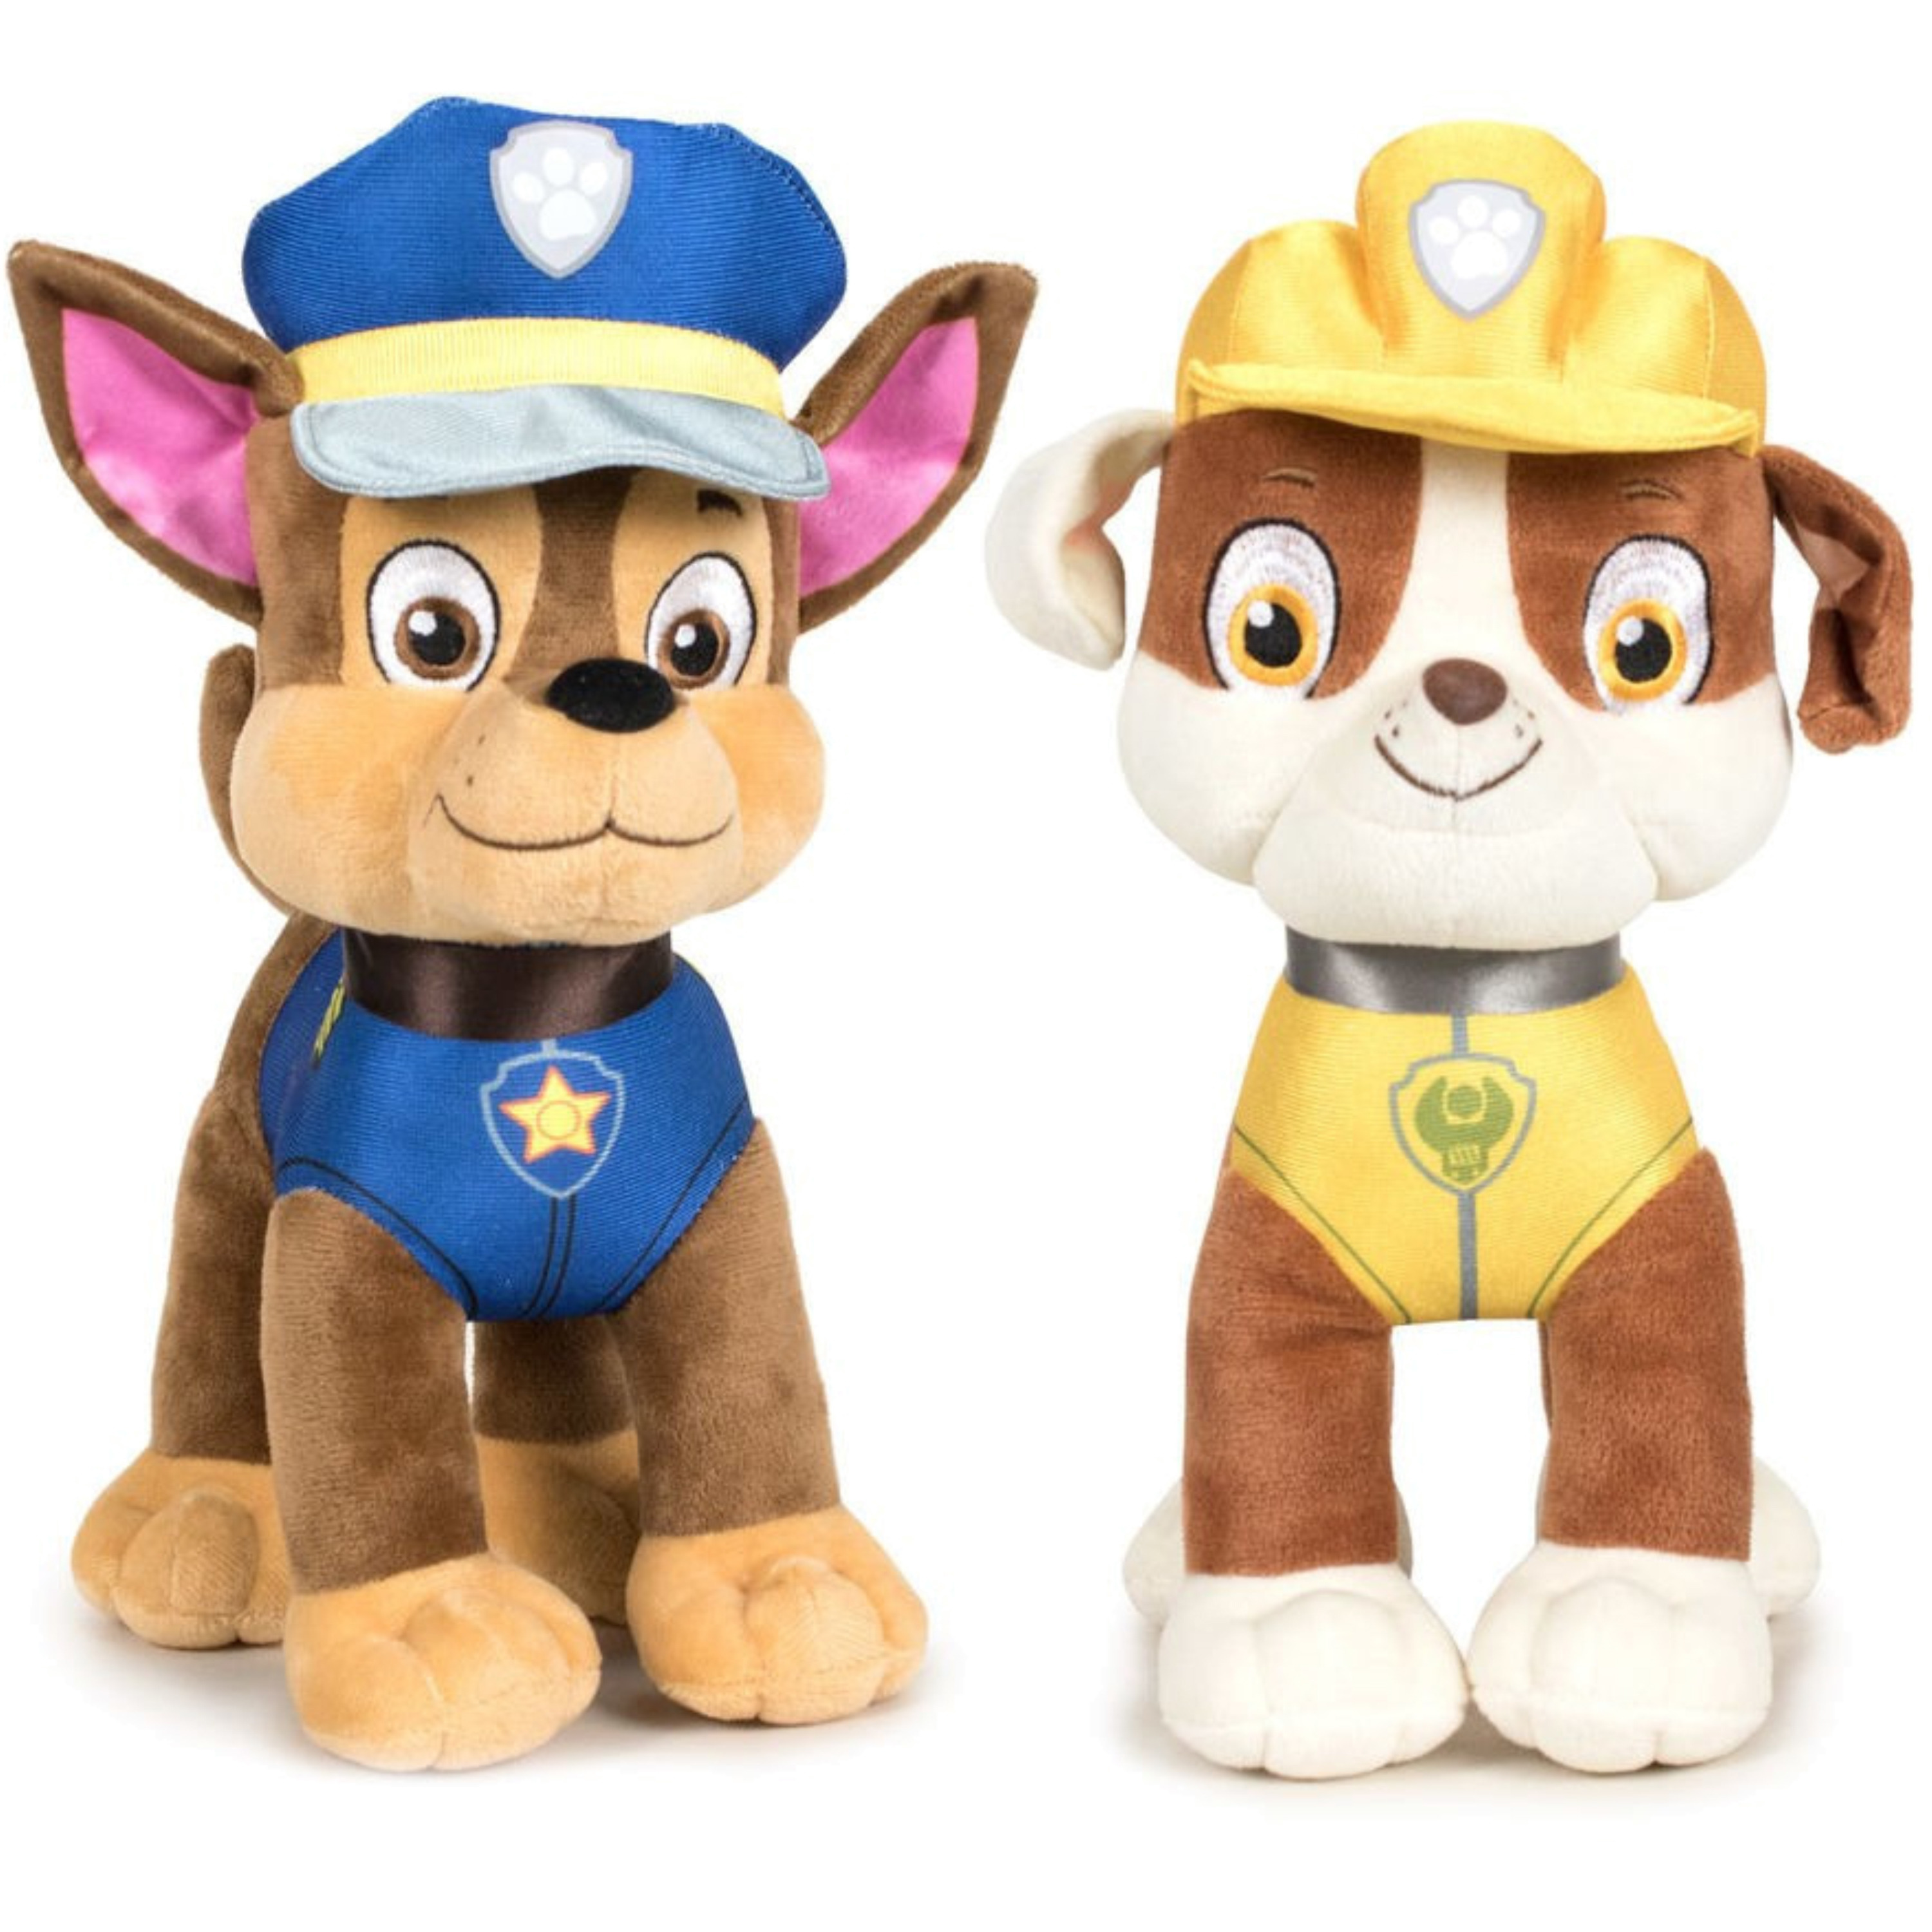 Paw Patrol figuren speelgoed knuffels set van 2x karakters Chase en Rubble 19 cm -